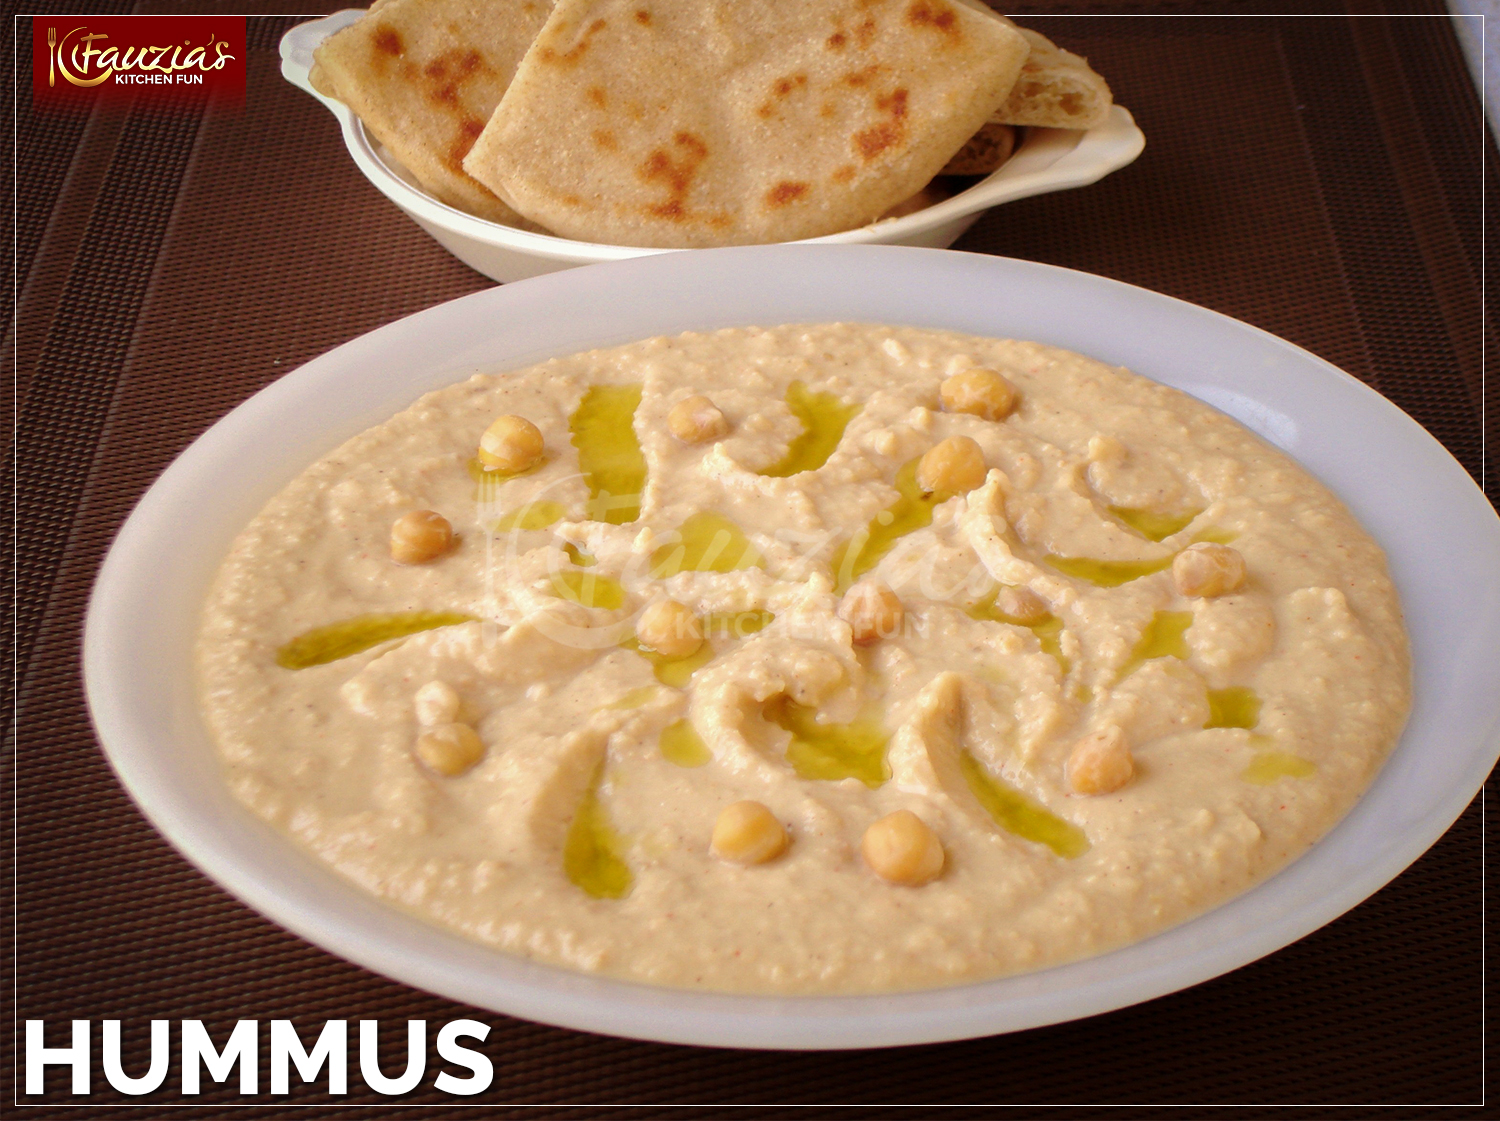 Hummus Bi Tahini Fauzia S Kitchen Fun